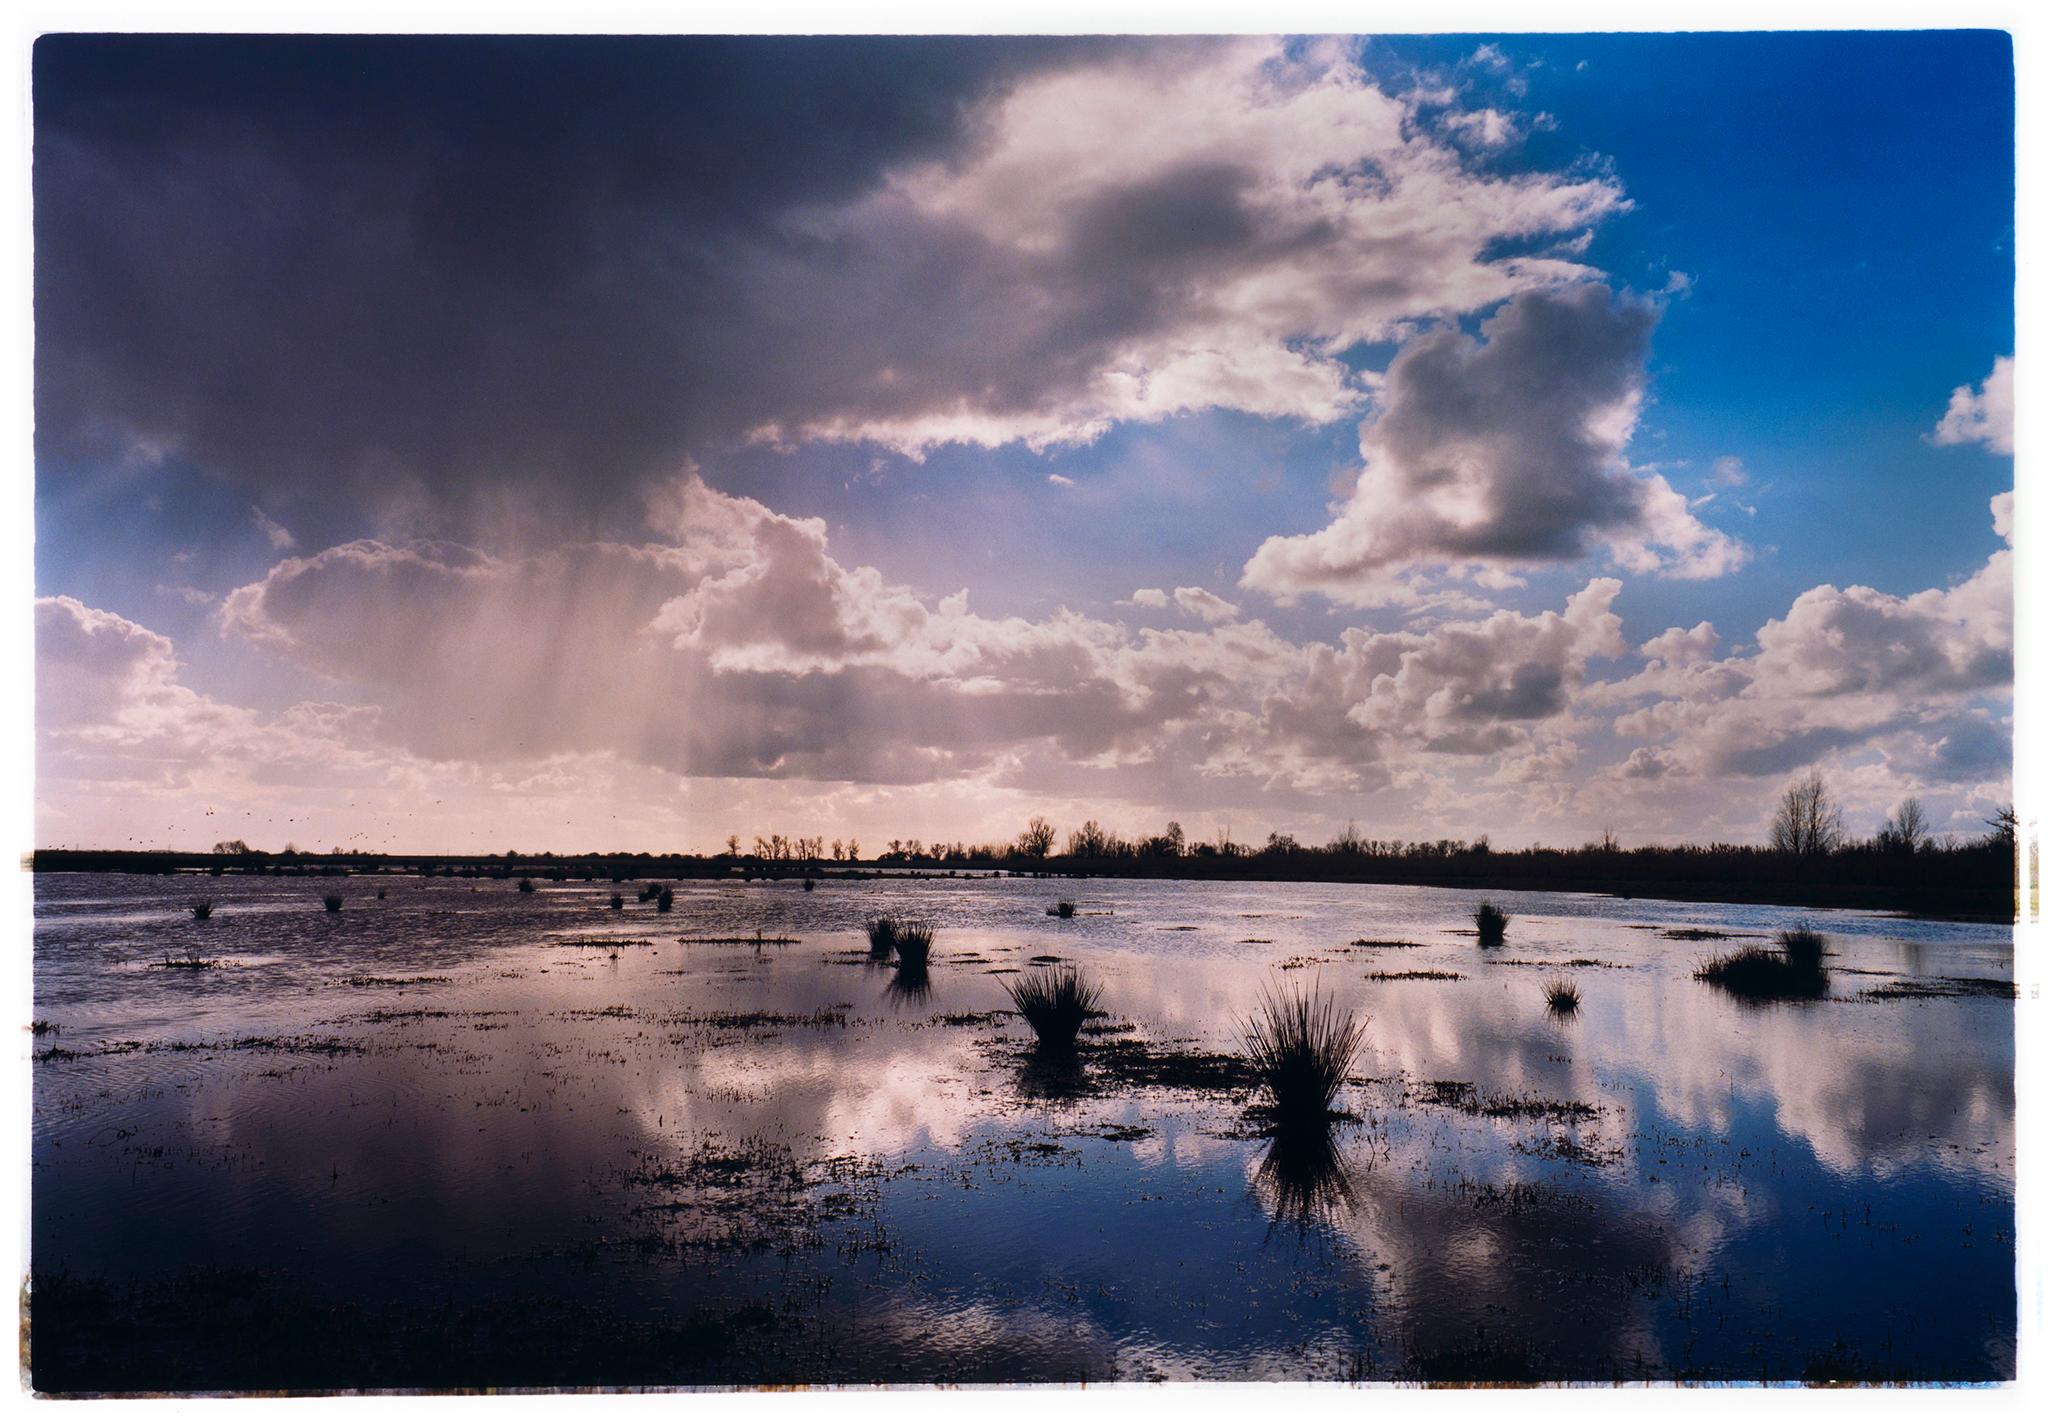 Richard Heeps Landscape Photograph - Baker's Fen, Wicken Fen, Cambridgeshire - landscape nature photograph